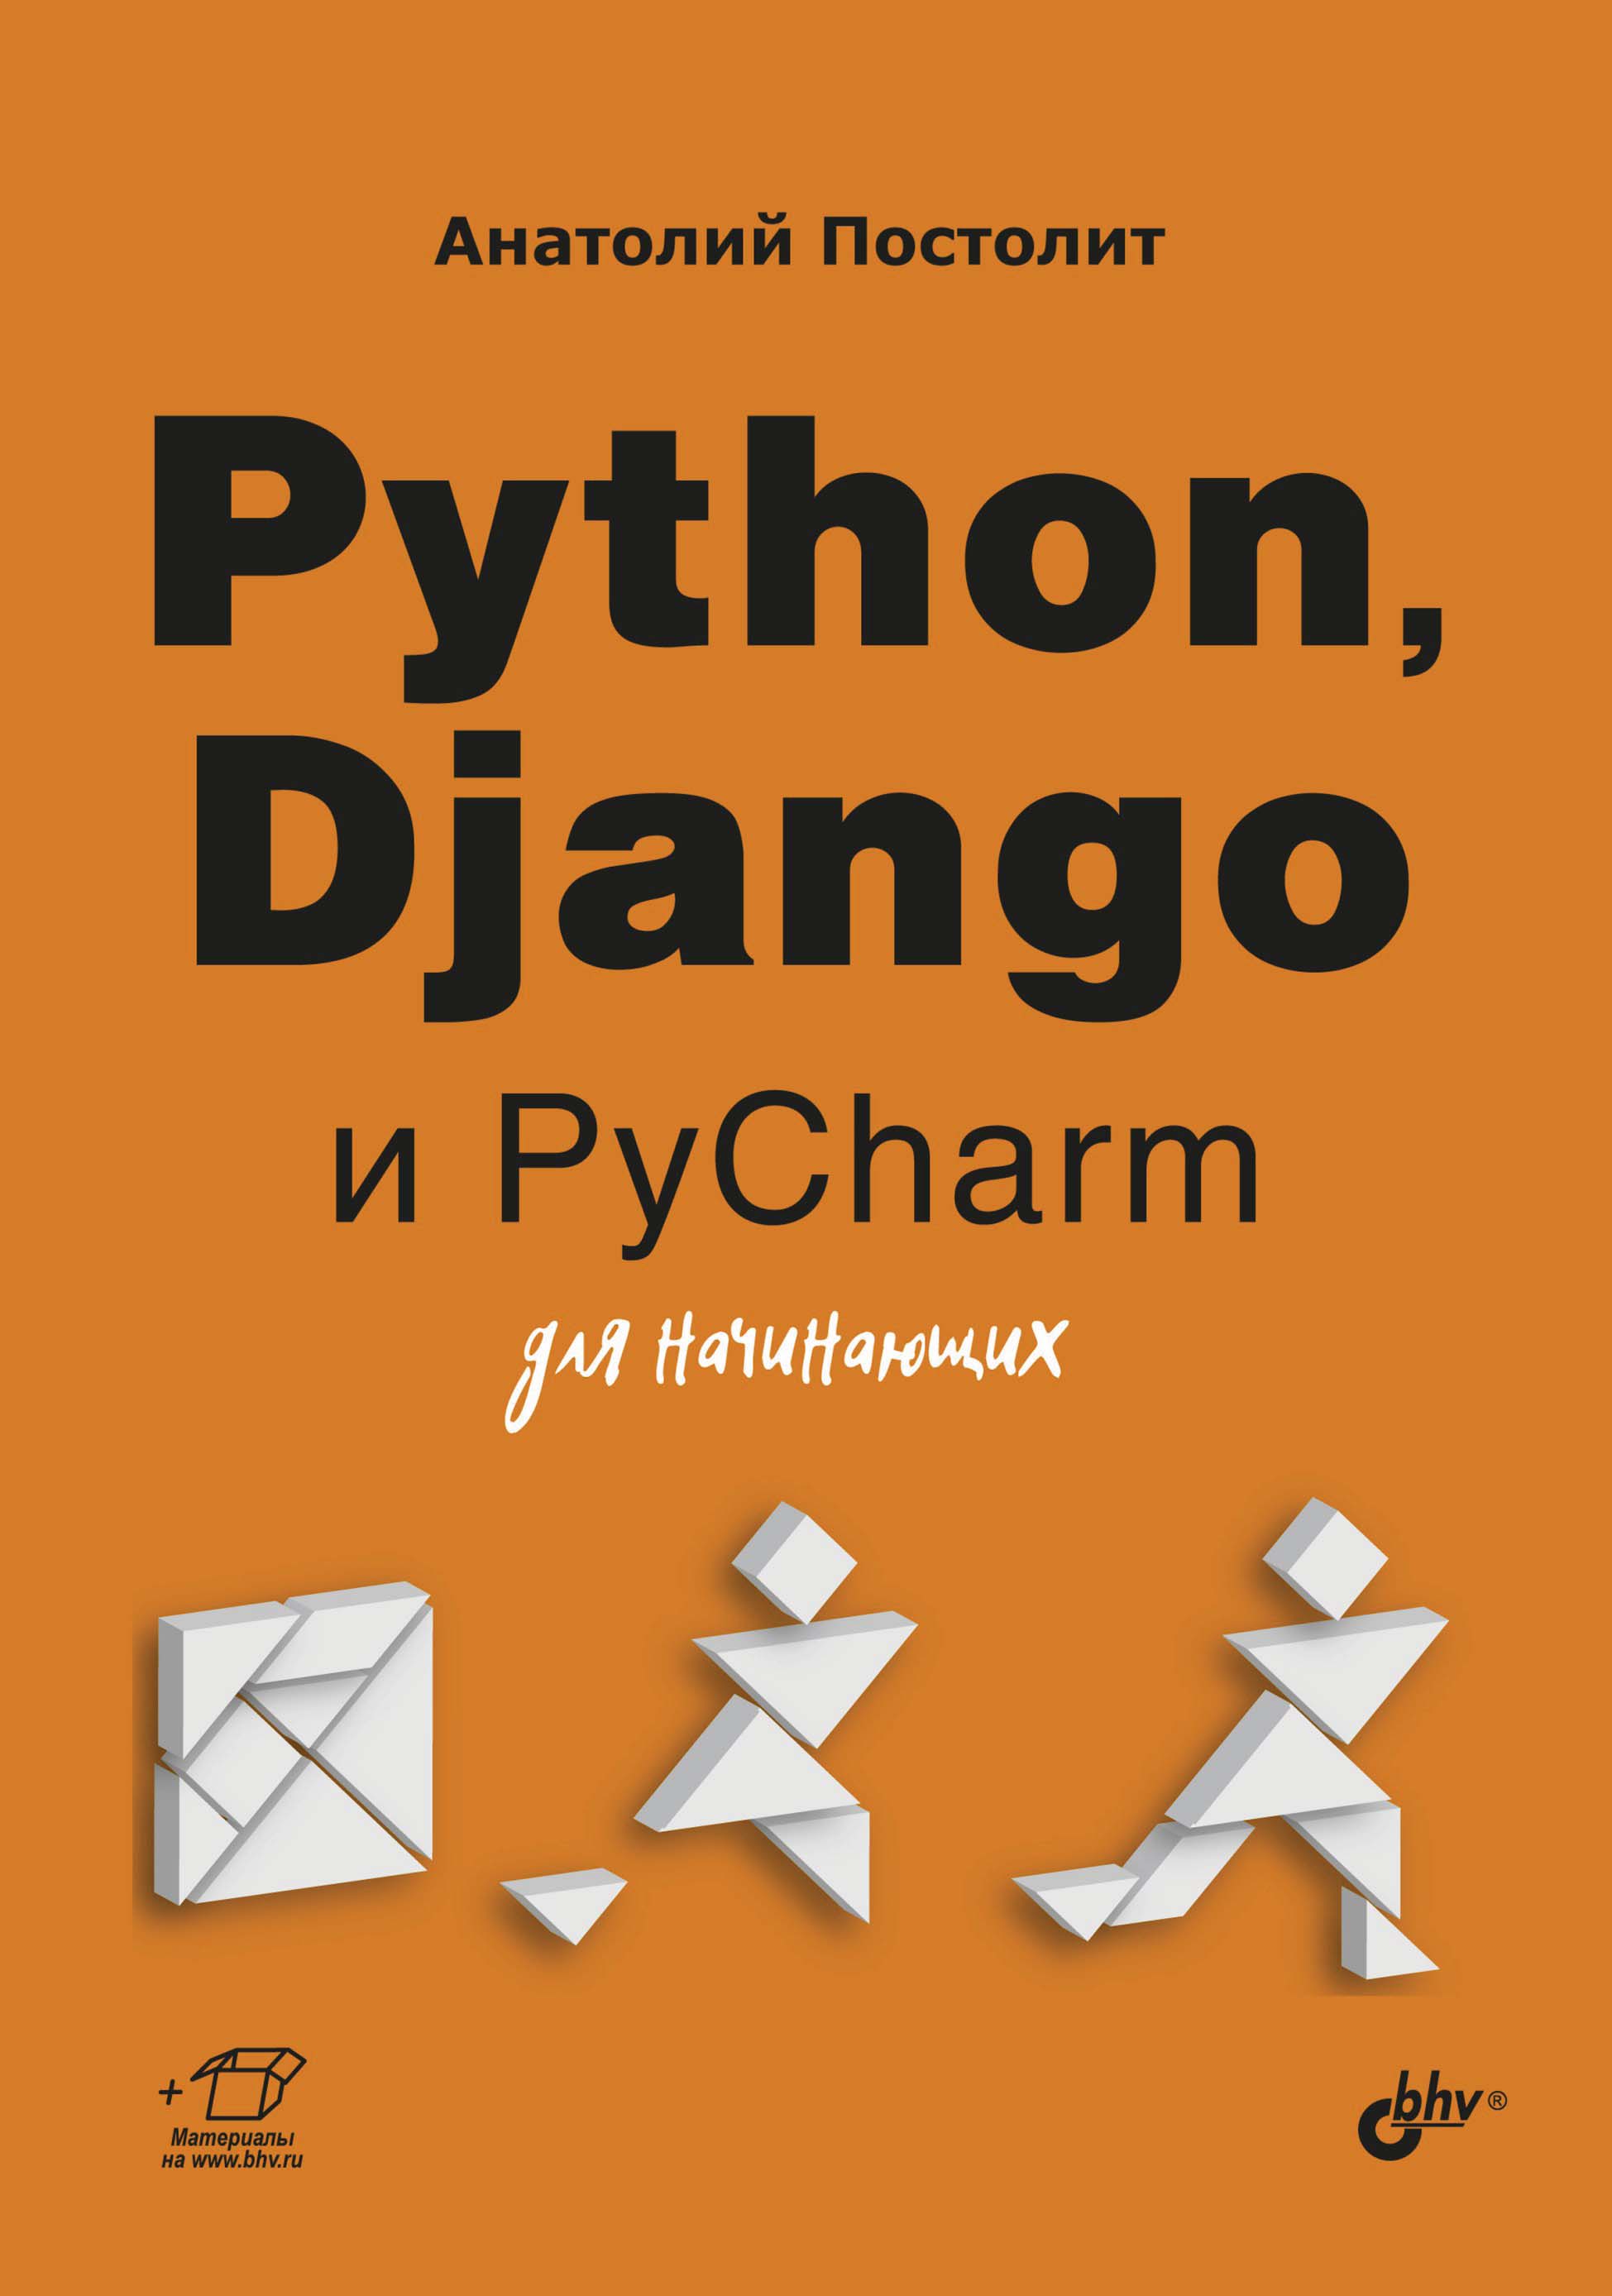 Книга Для начинающих (BHV) Python, Django и PyCharm для начинающих созданная Анатолий Постолит может относится к жанру интернет, программирование. Стоимость электронной книги Python, Django и PyCharm для начинающих с идентификатором 67727943 составляет 544.00 руб.